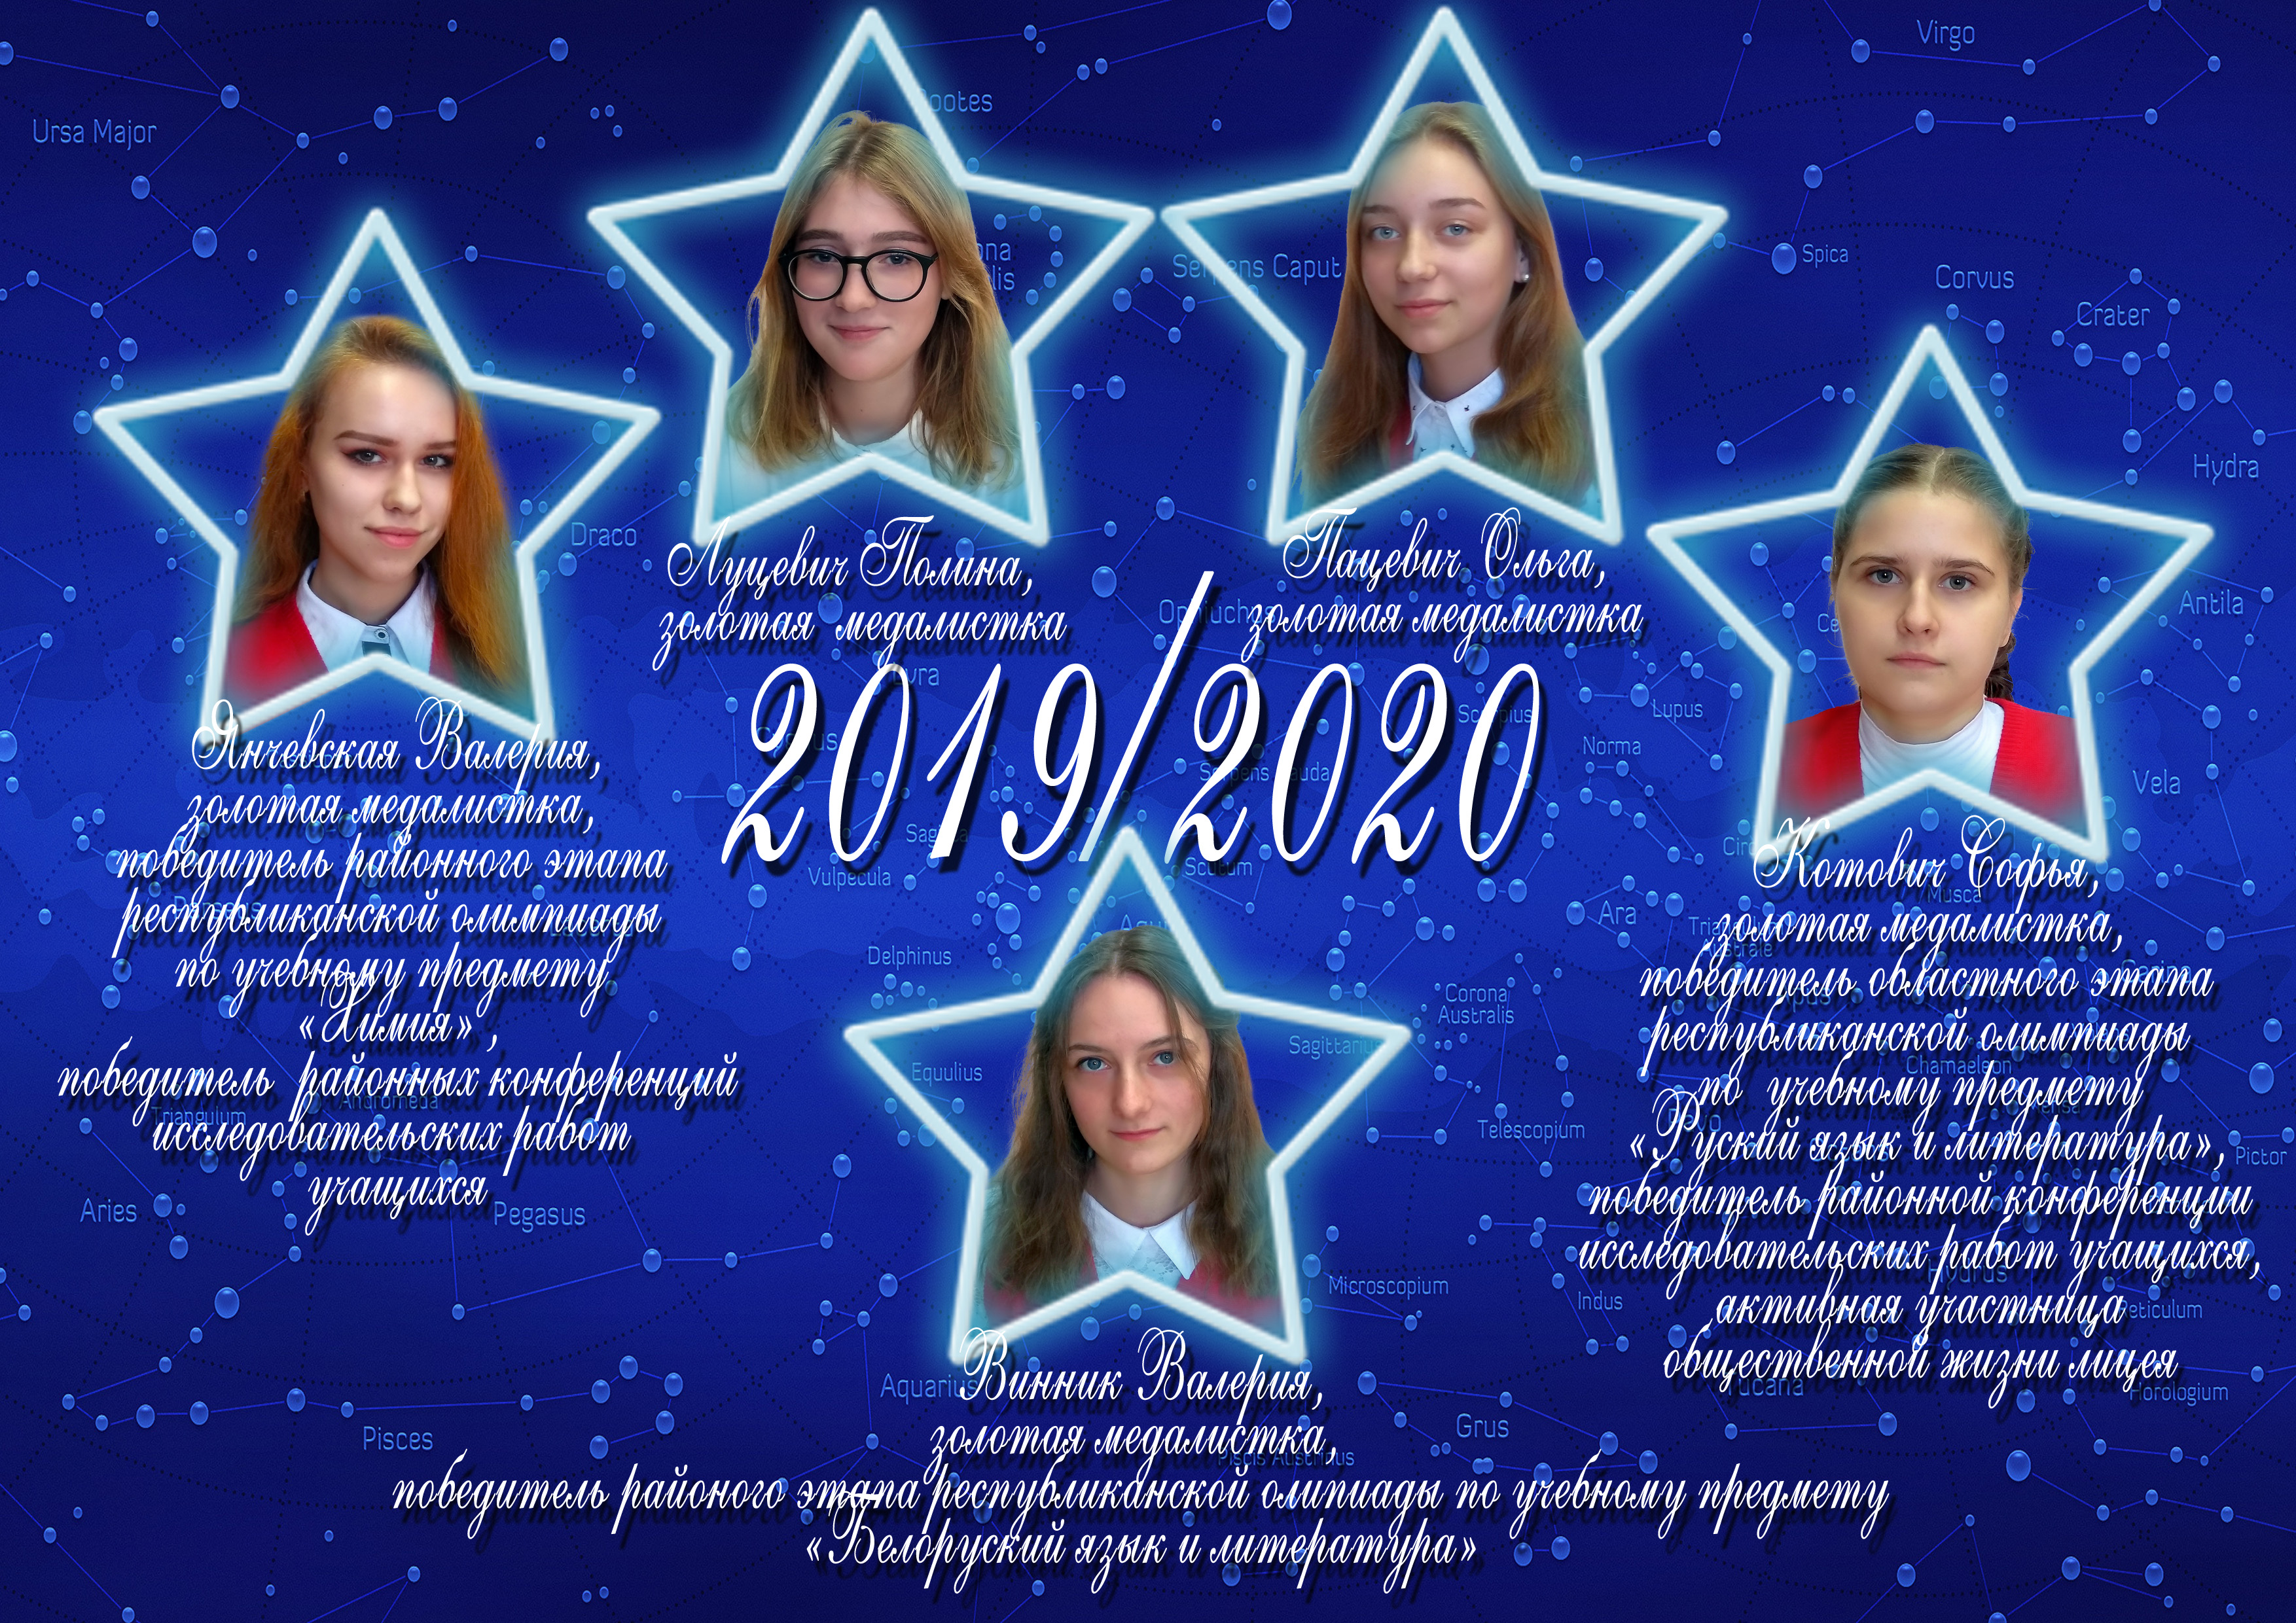 Созвездие лицея 2019/2020 учебного года